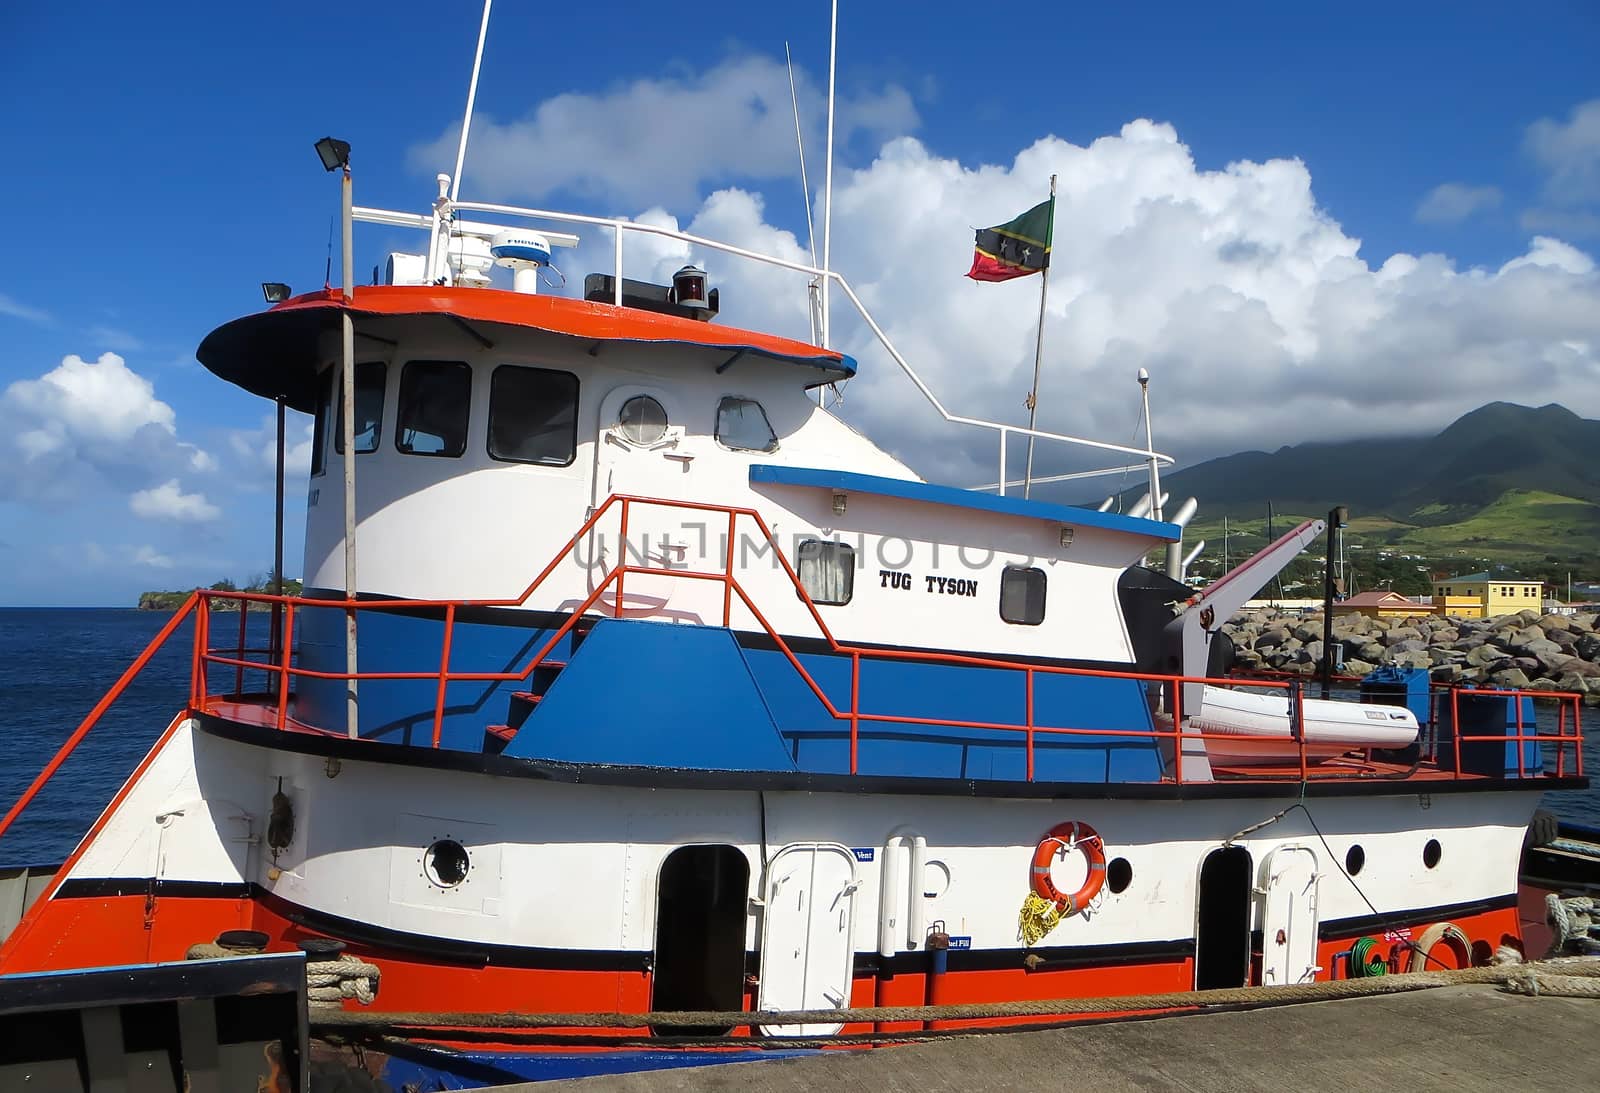 St. Kitts Tugboat by teacherdad48@yahoo.com